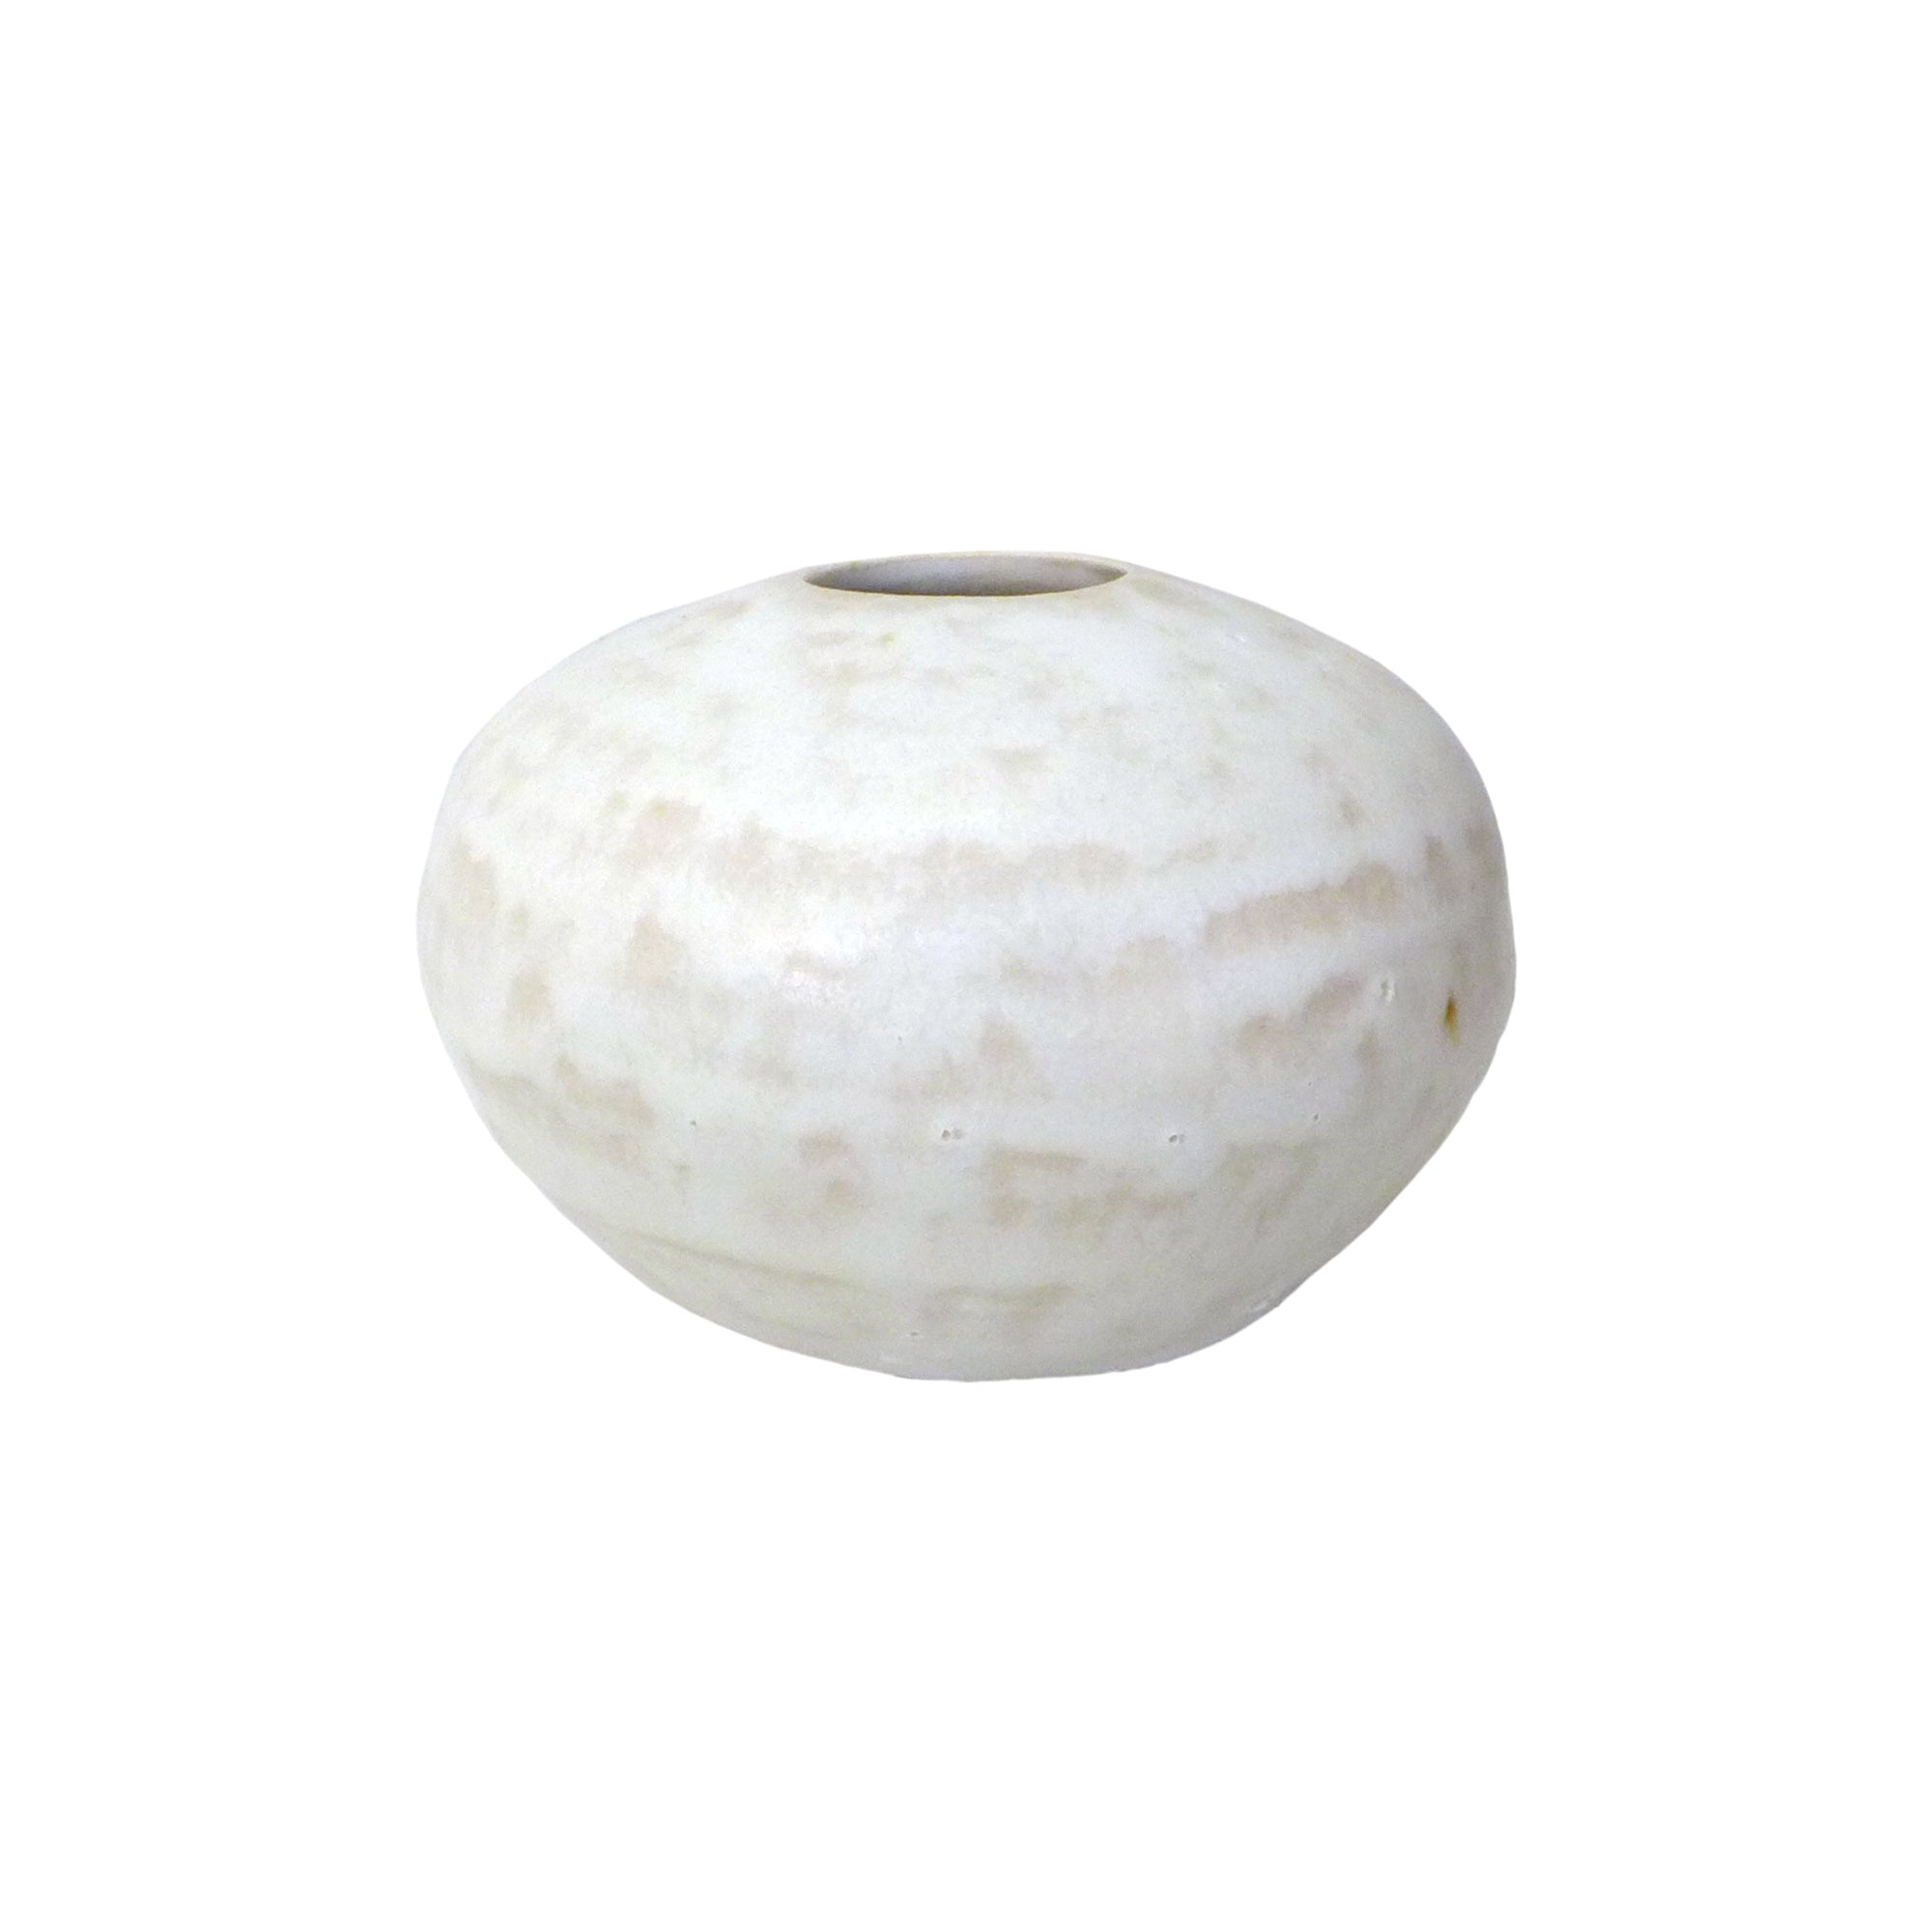 Contemporary Studio Ceramic Bud Vase